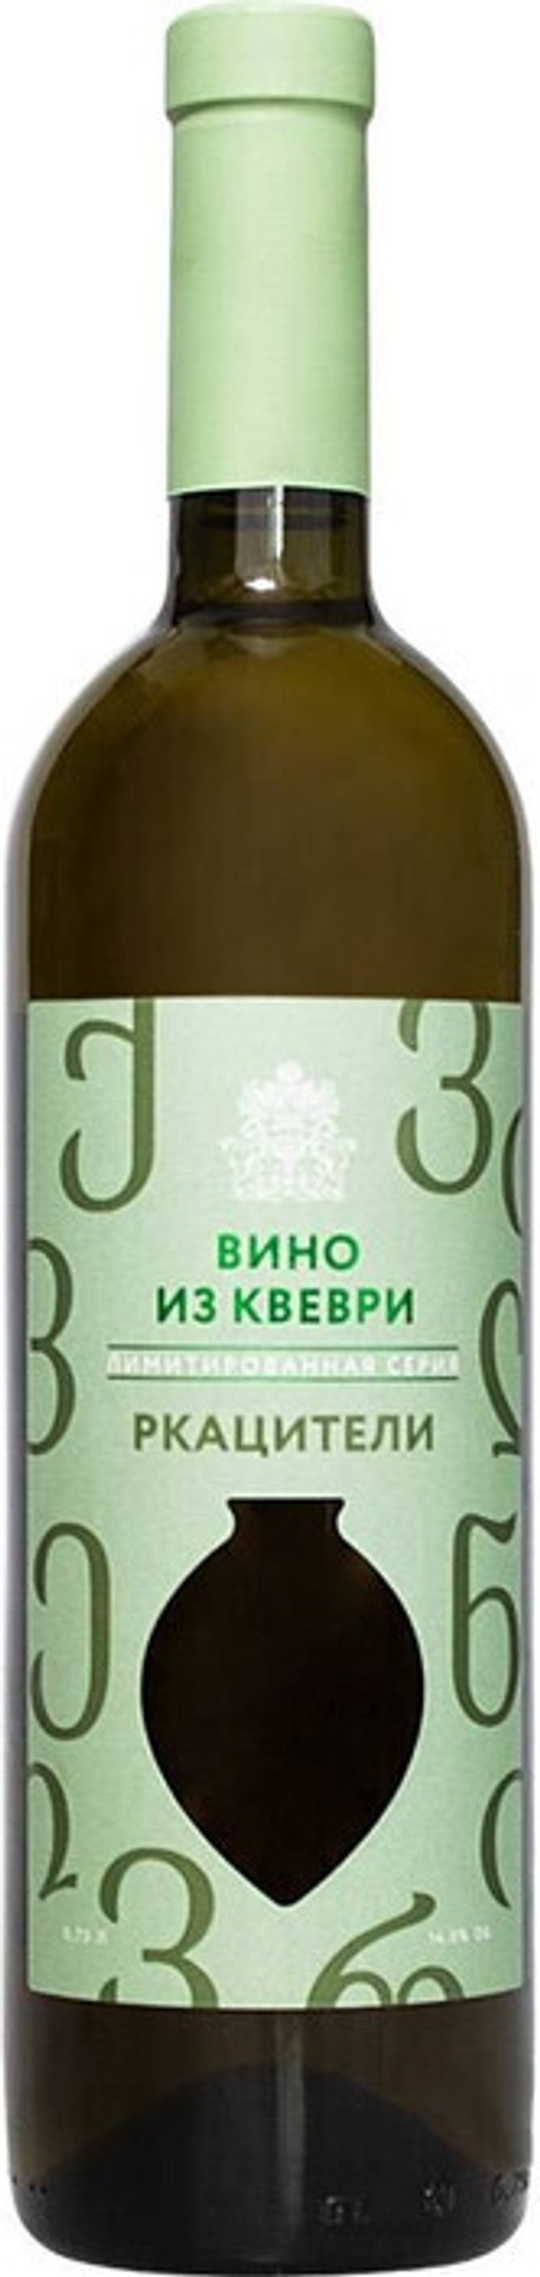 Вино Усадьба Перовских Ркацители Квеври, 0,75 л.